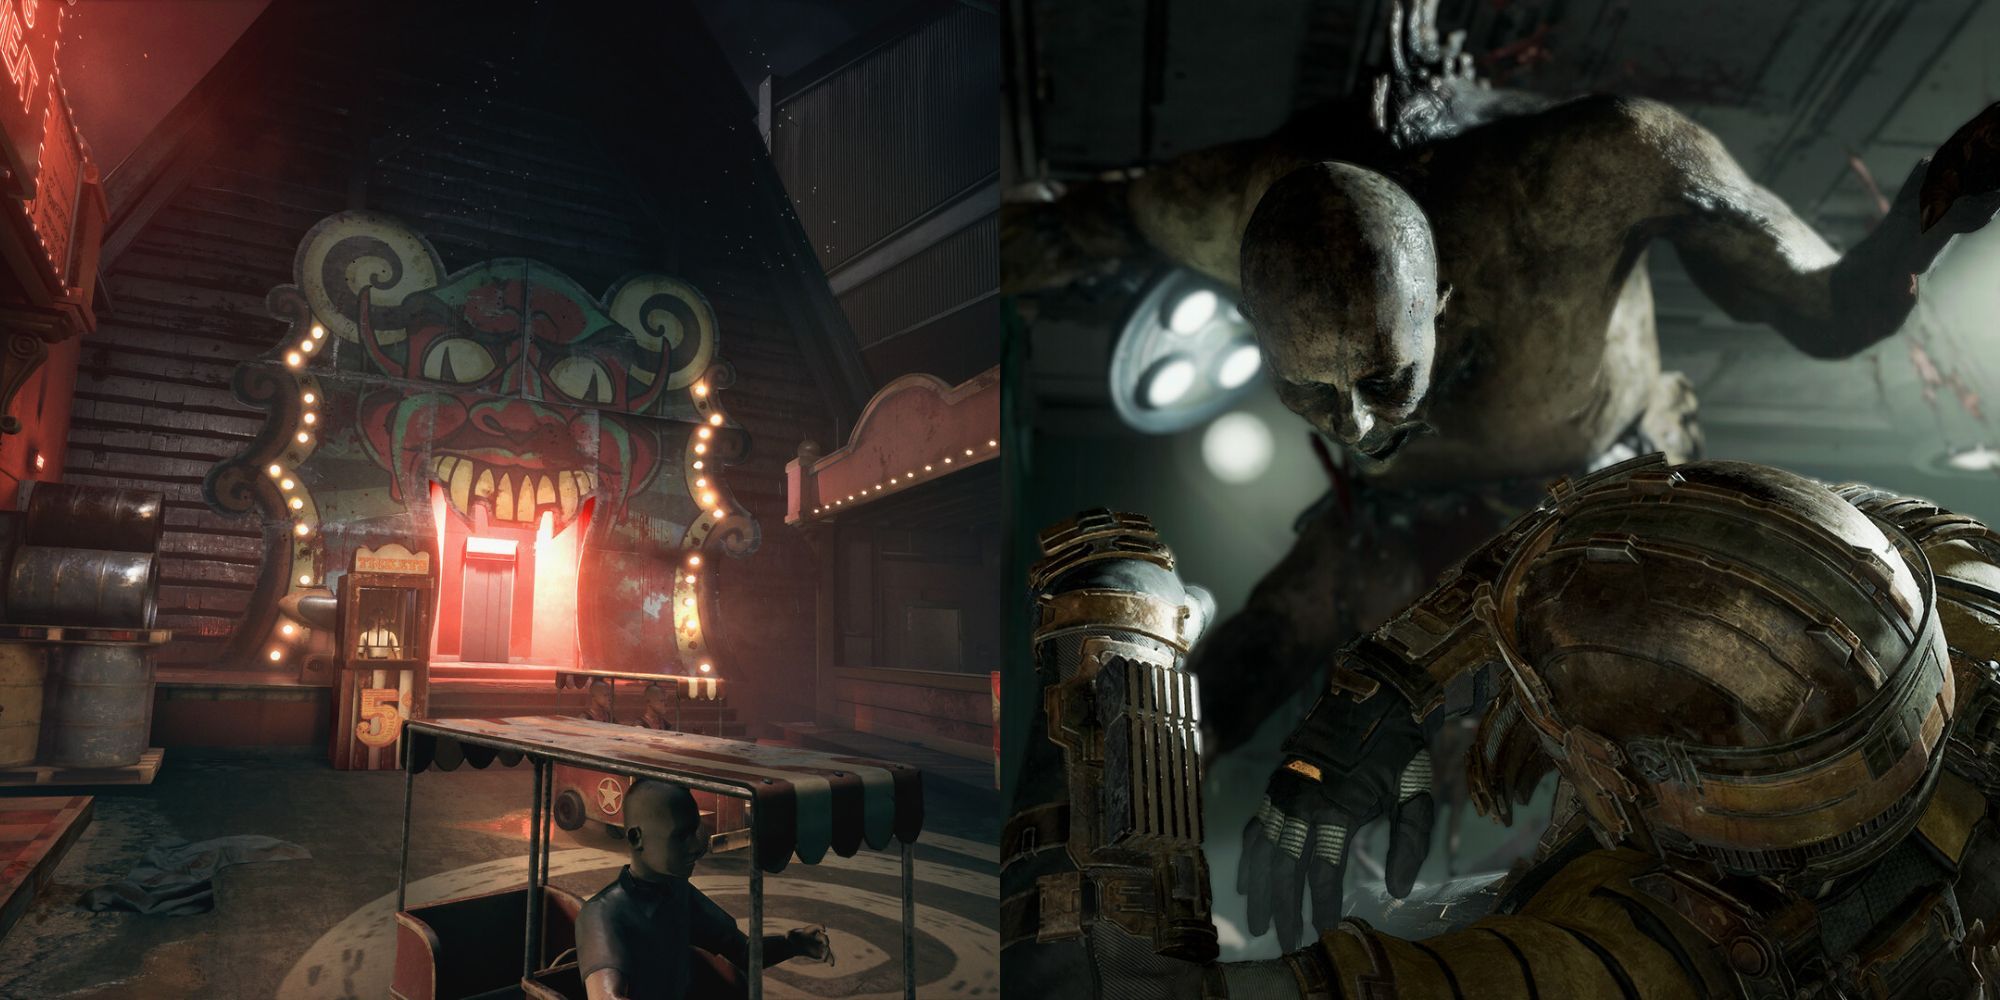 Horror Night: The Slenderman Takings - Multiplayer Horror Game : u